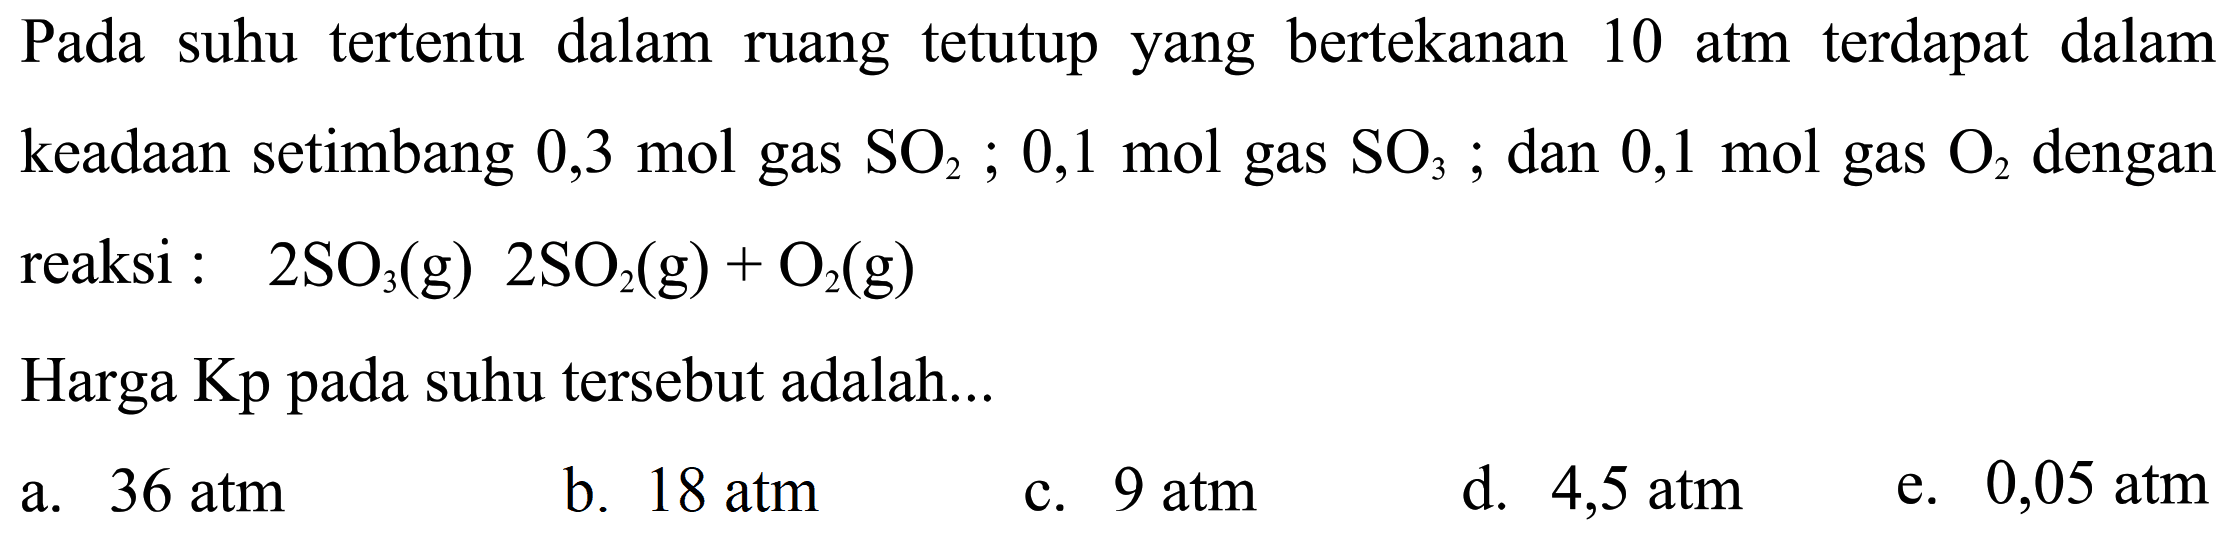 Pada suhu tertentu dalam ruang tetutup yang bertekanan 10 atm terdapat dalam keadaan setimbang 0,3 mol gas SO2; 0,1 mol gas SO3; dan 0,1 mol gas O2 dengan reaksi: 2SO3(g) 2SO2(g)+O2(g) Harga Kp pada suhu tersebut adalah...